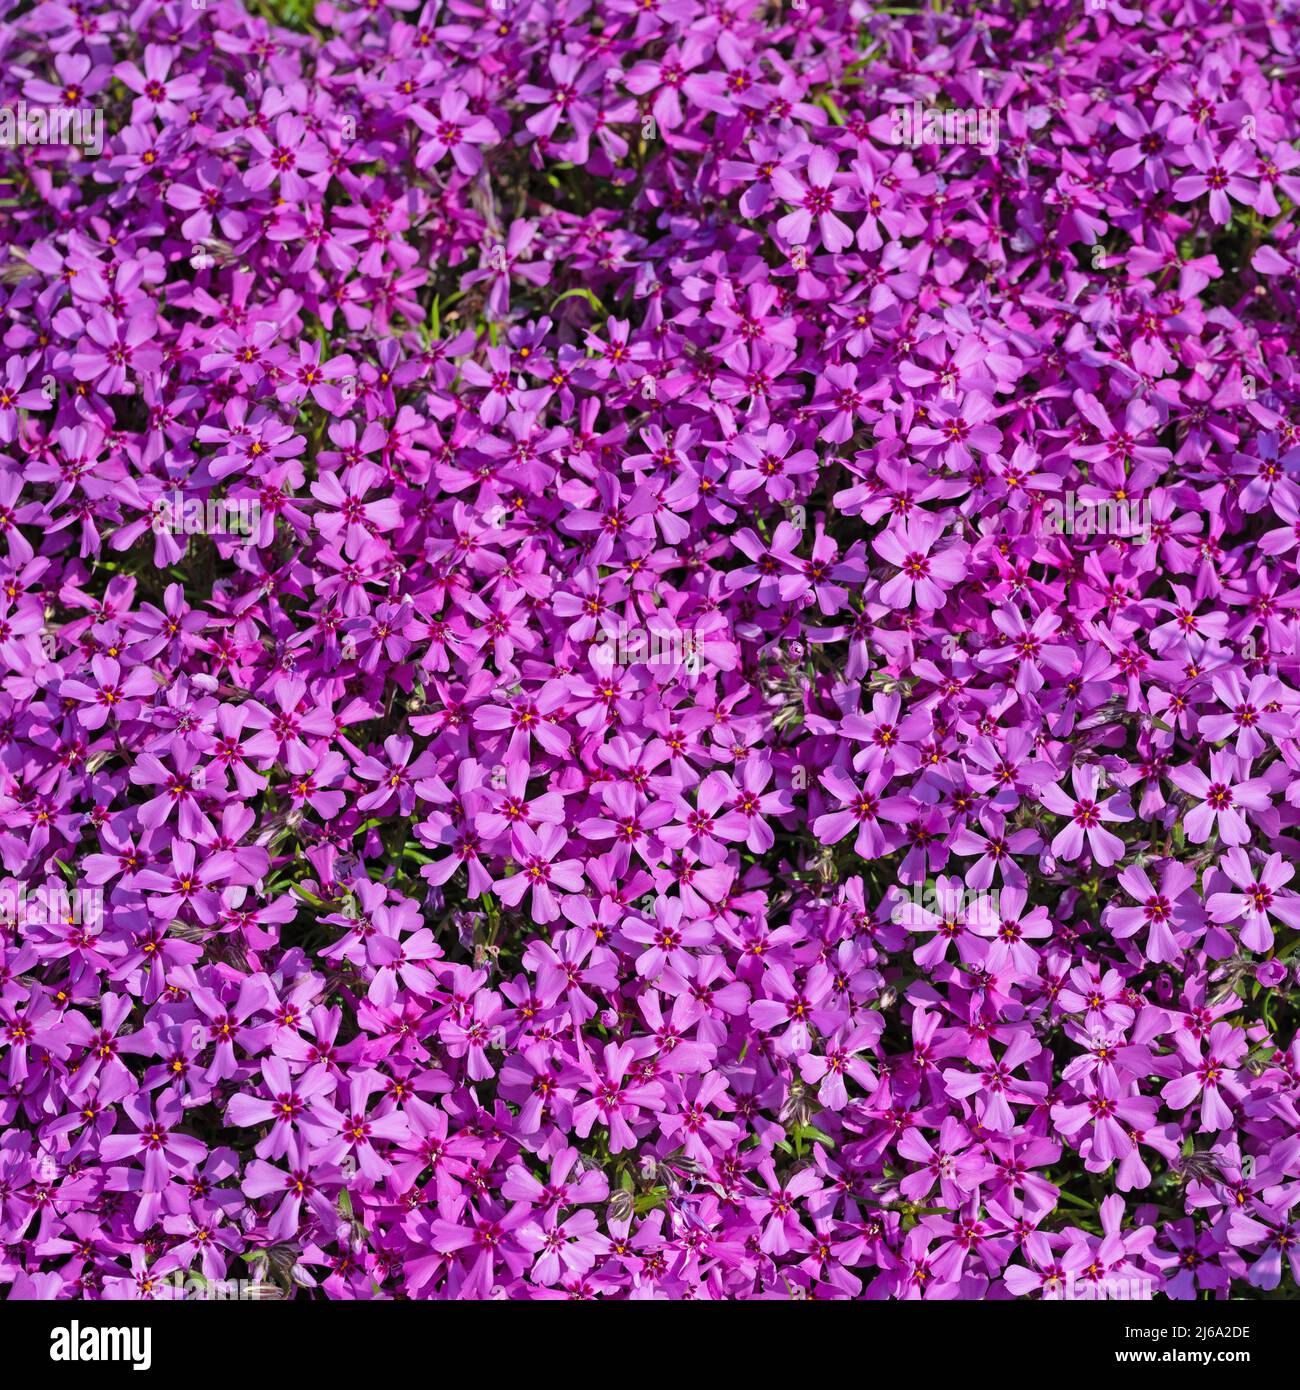 Flowering cushion phlox, Phlox subulata Stock Photo